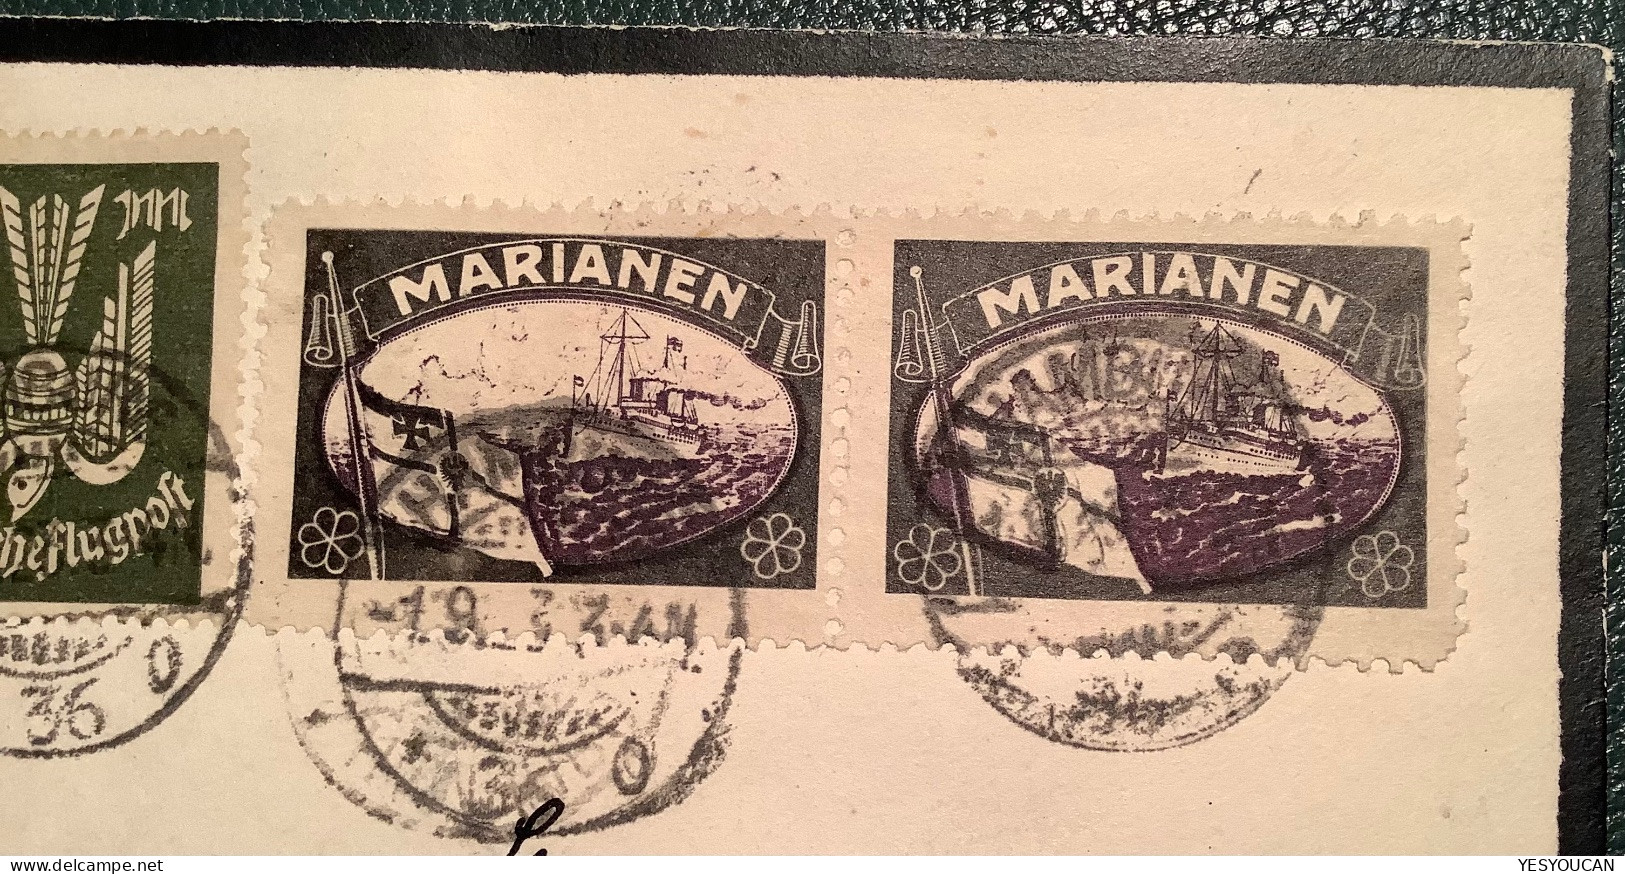 Marianen1923 Verlorene Deutsche Kolonien Vignette Brief ! HAMBURG Infla>Schweiz(Marianas Guam Propaganda Mourning Label - Islas Maríanas